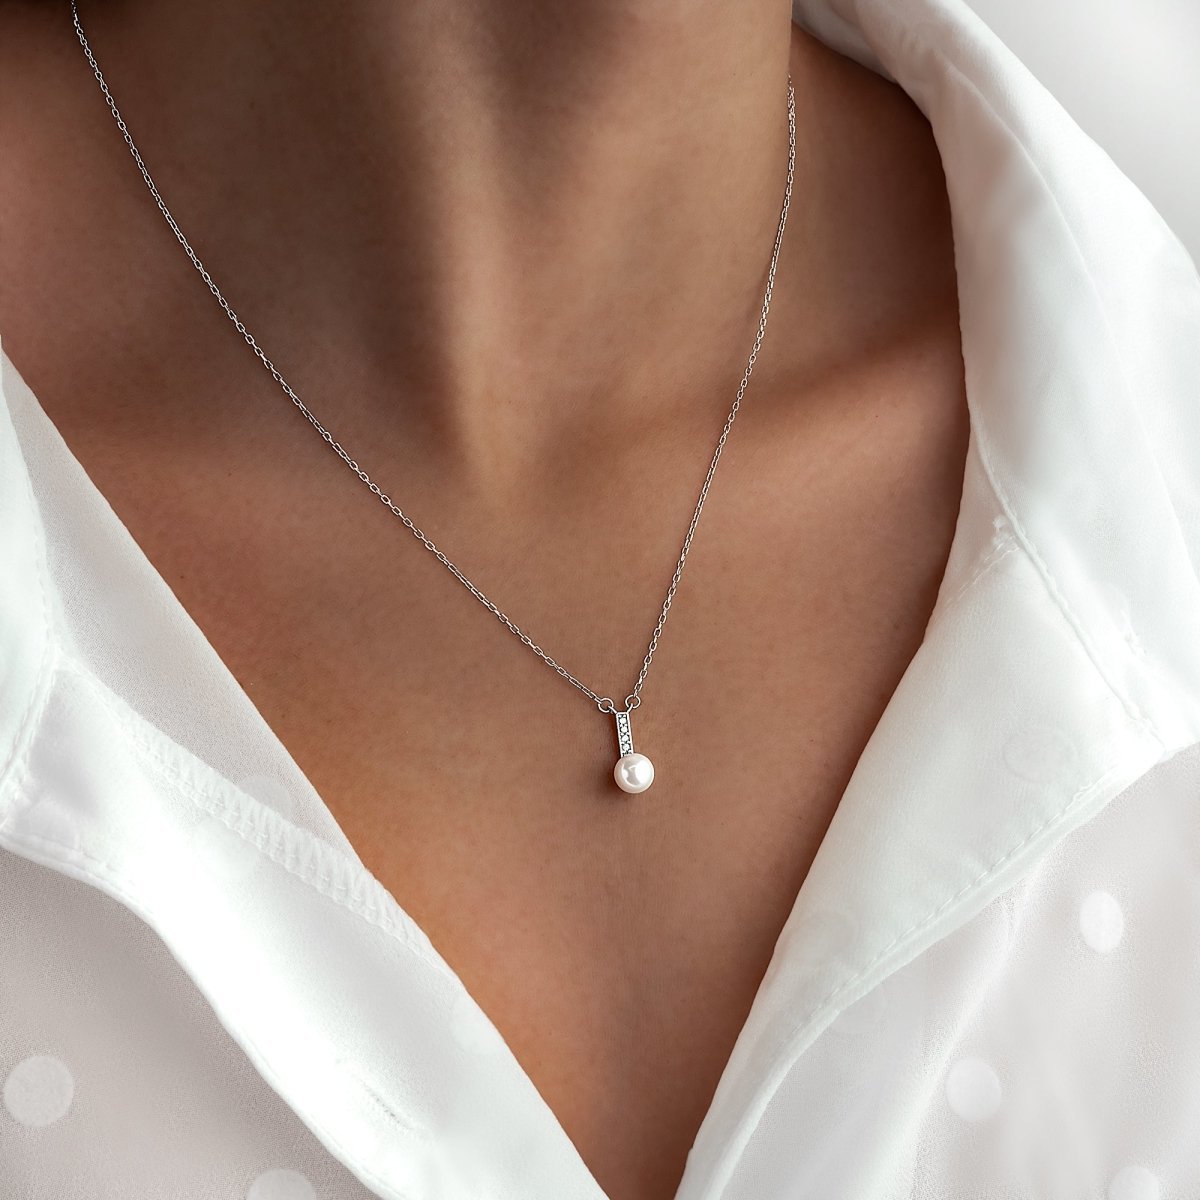 Joyas con perlas, un accesorio atemporal - LePetiteMarie